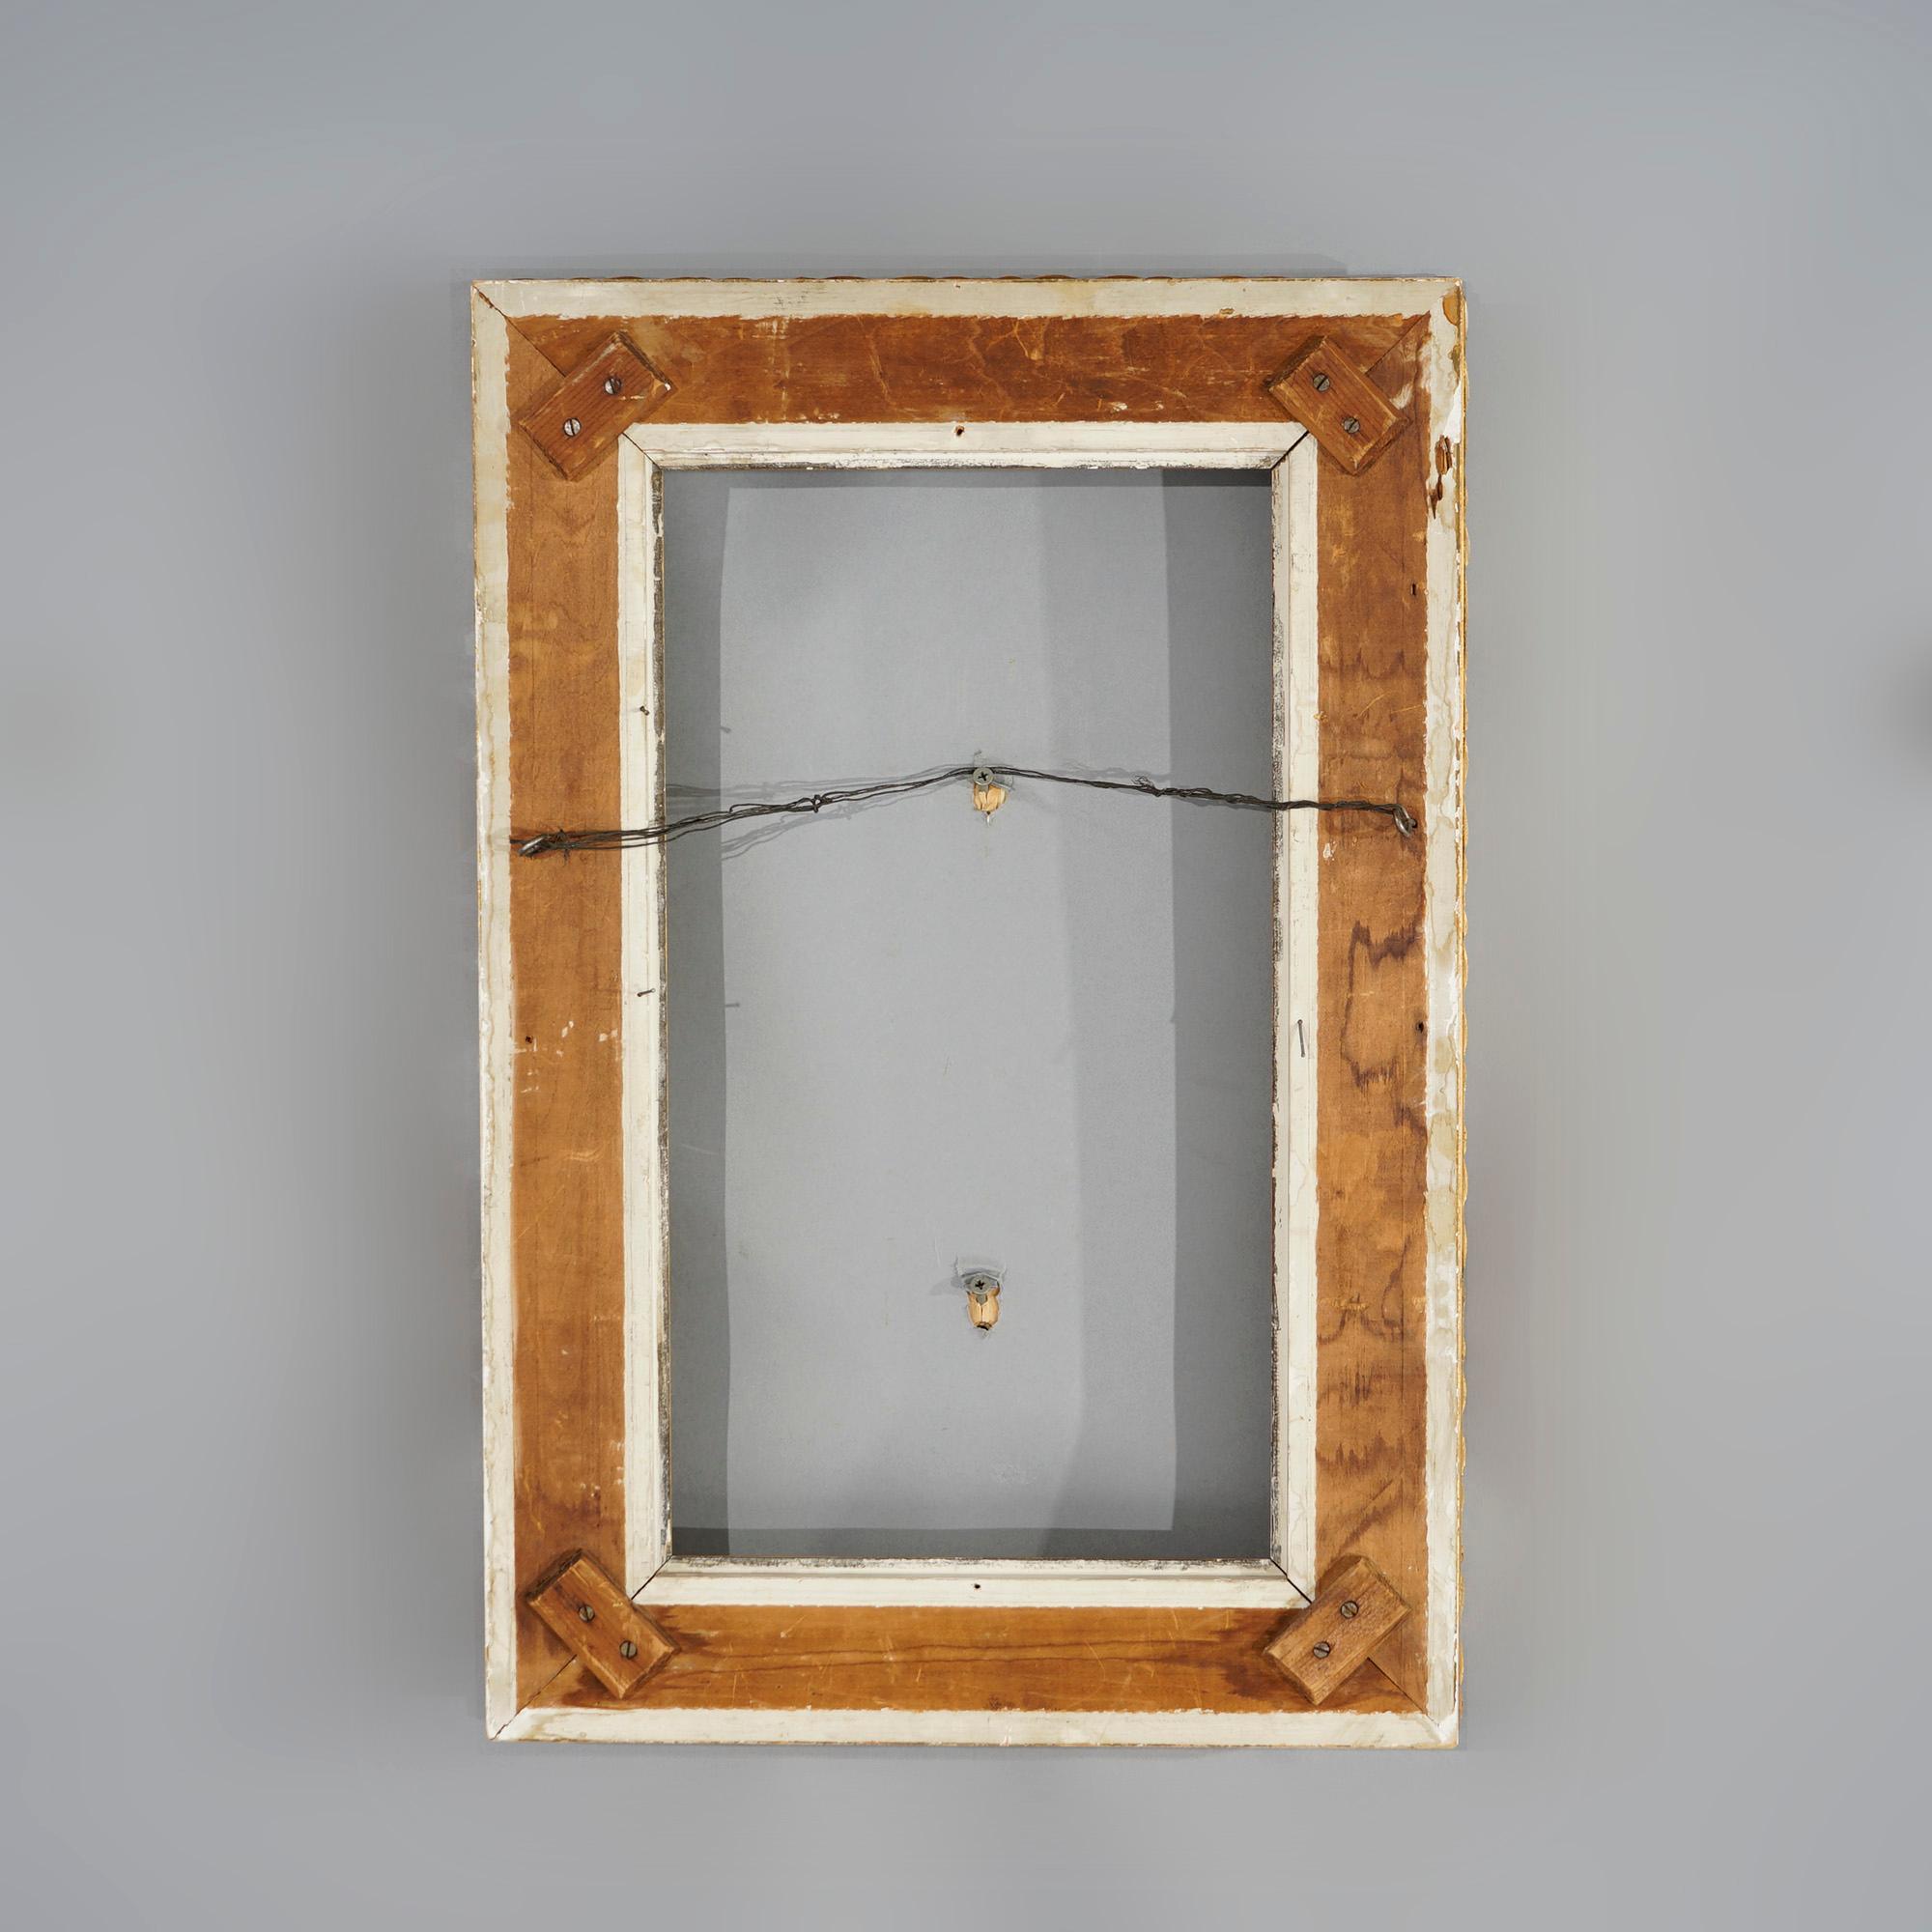 Un cadre de peinture victorien antique offre une construction en bois doré avec des éléments de feuillage, de volutes et de godrons en relief, vers 1890.

Mesures- total 24.5''H x 16.5''W x 2.75''D ; vue 18.5'' x 10.5''.

Note sur le catalogue :